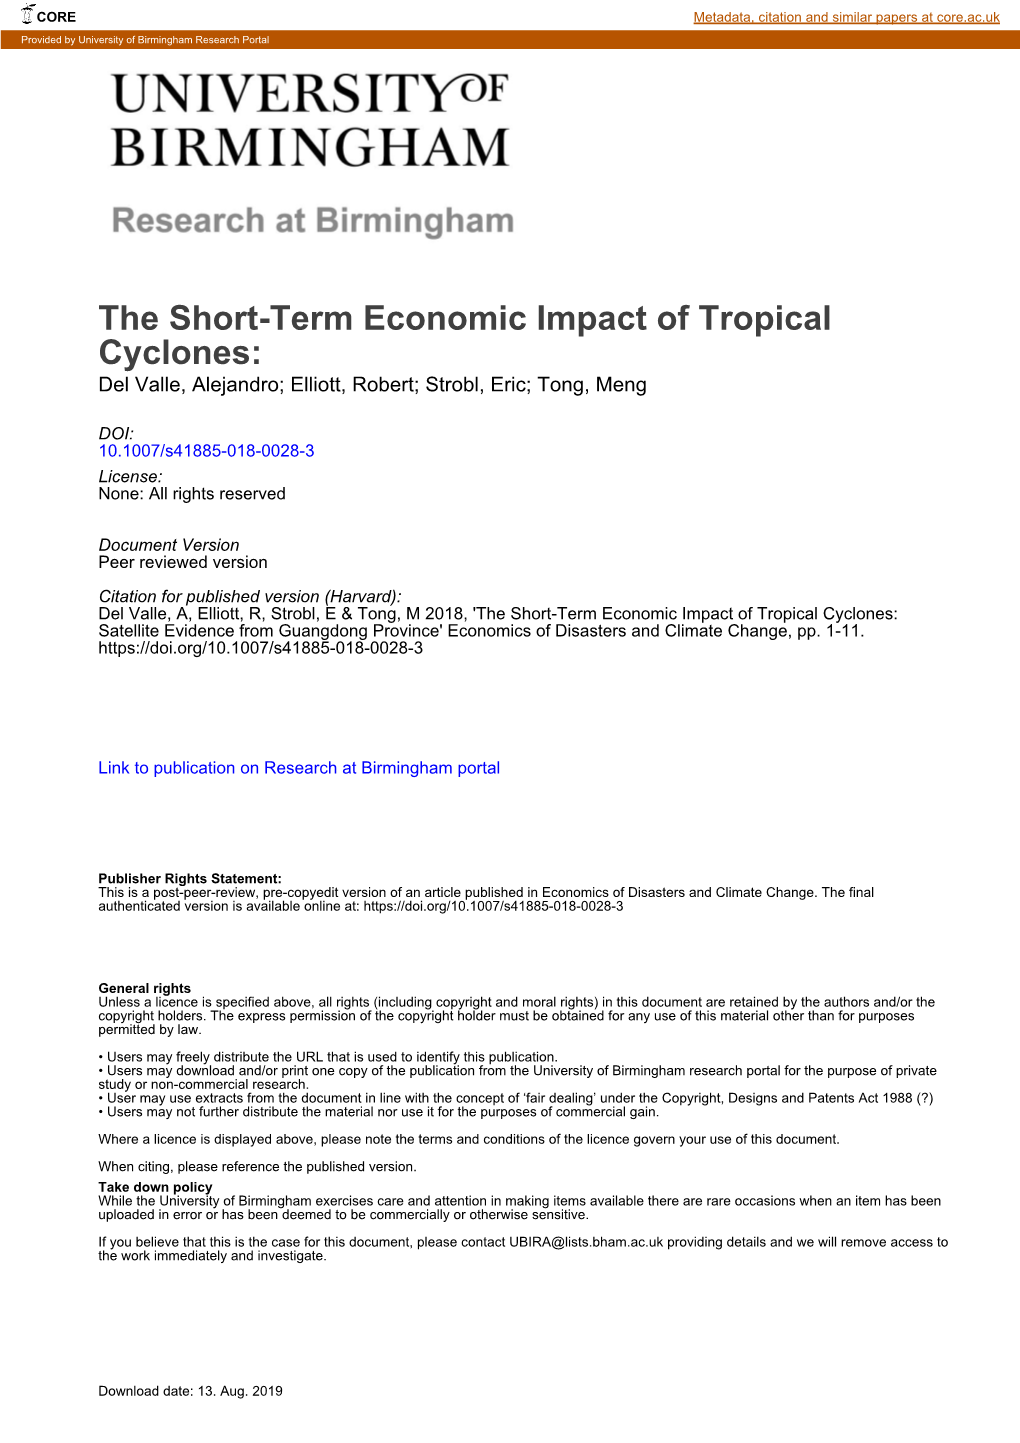 The Short-Term Economic Impact of Tropical Cyclones: Del Valle, Alejandro; Elliott, Robert; Strobl, Eric; Tong, Meng